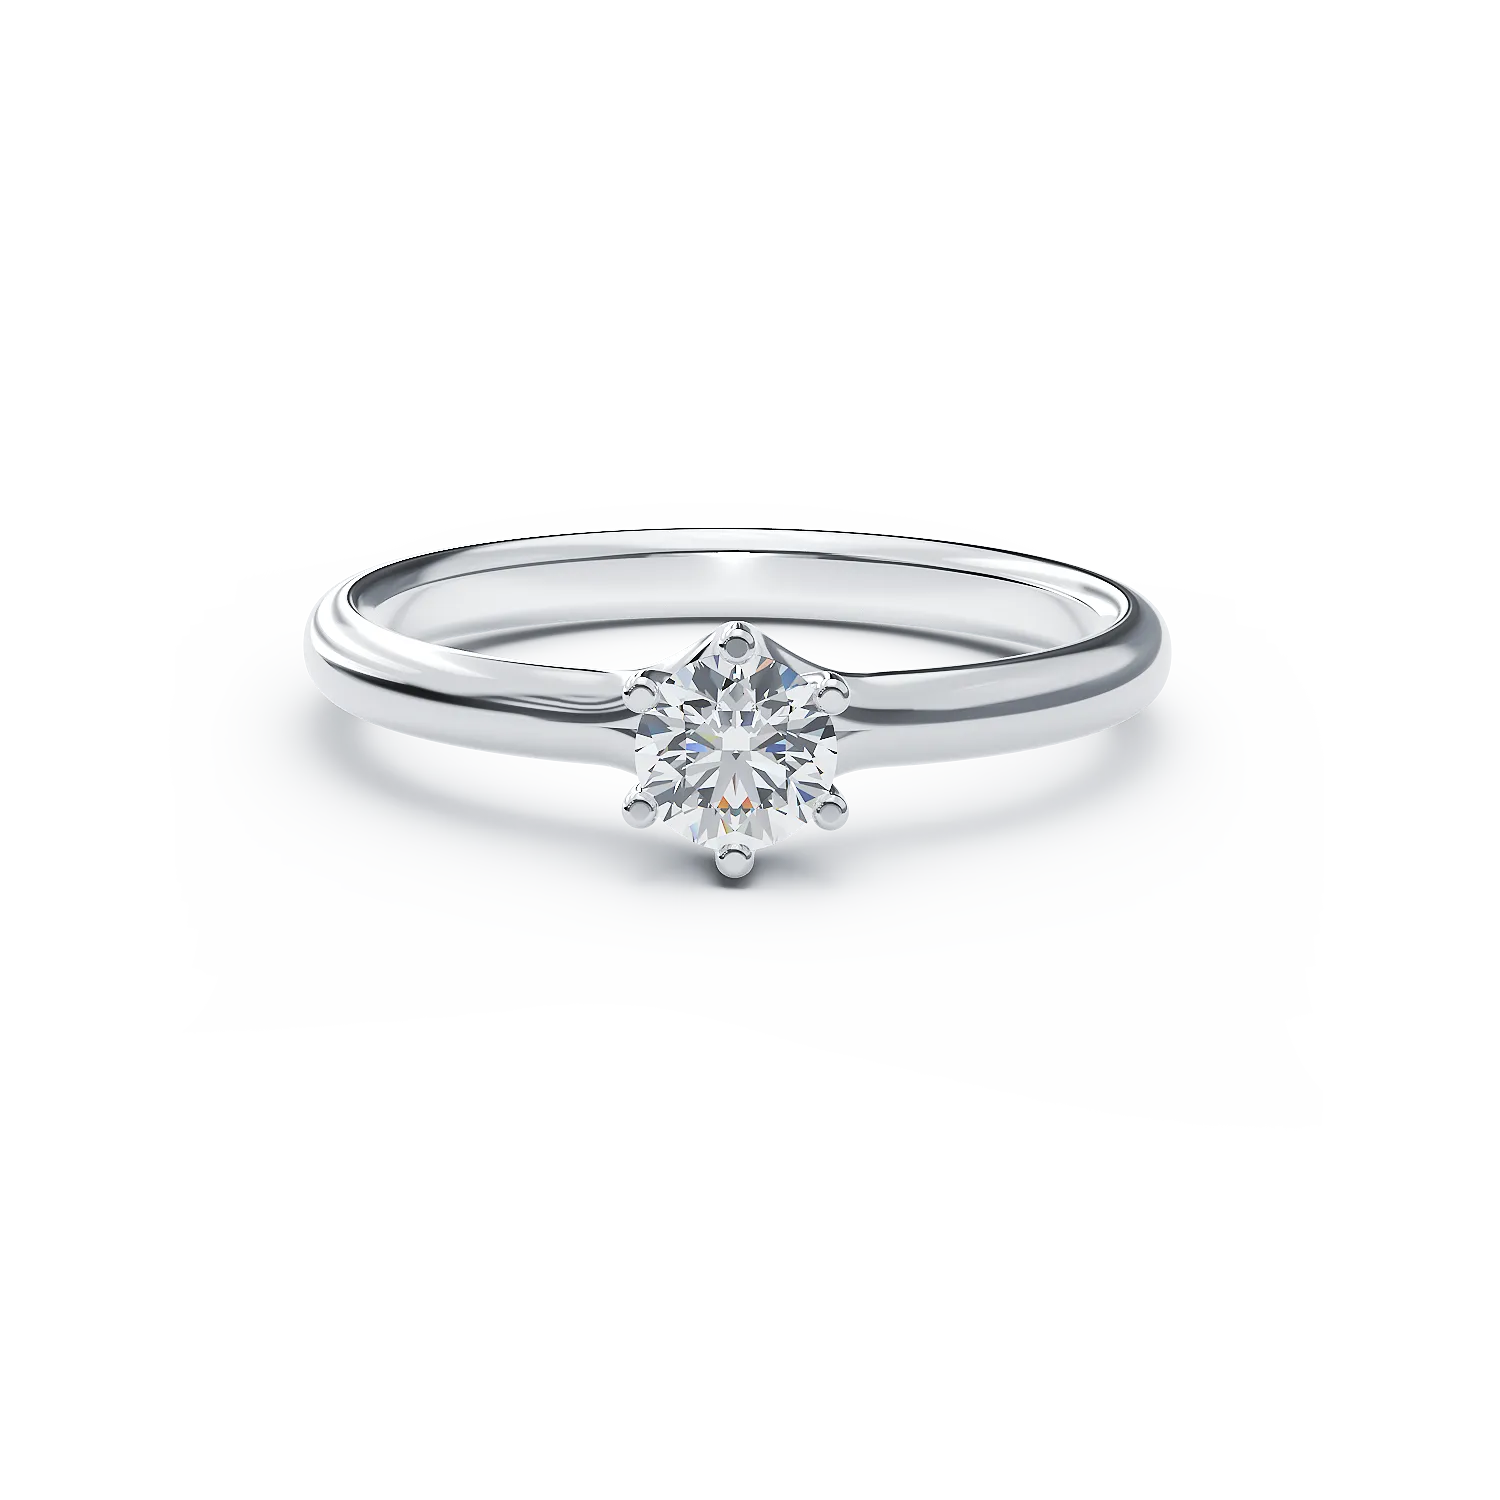 Inel de logodna din aur alb de 18K cu un diamant solitaire de 0.305ct